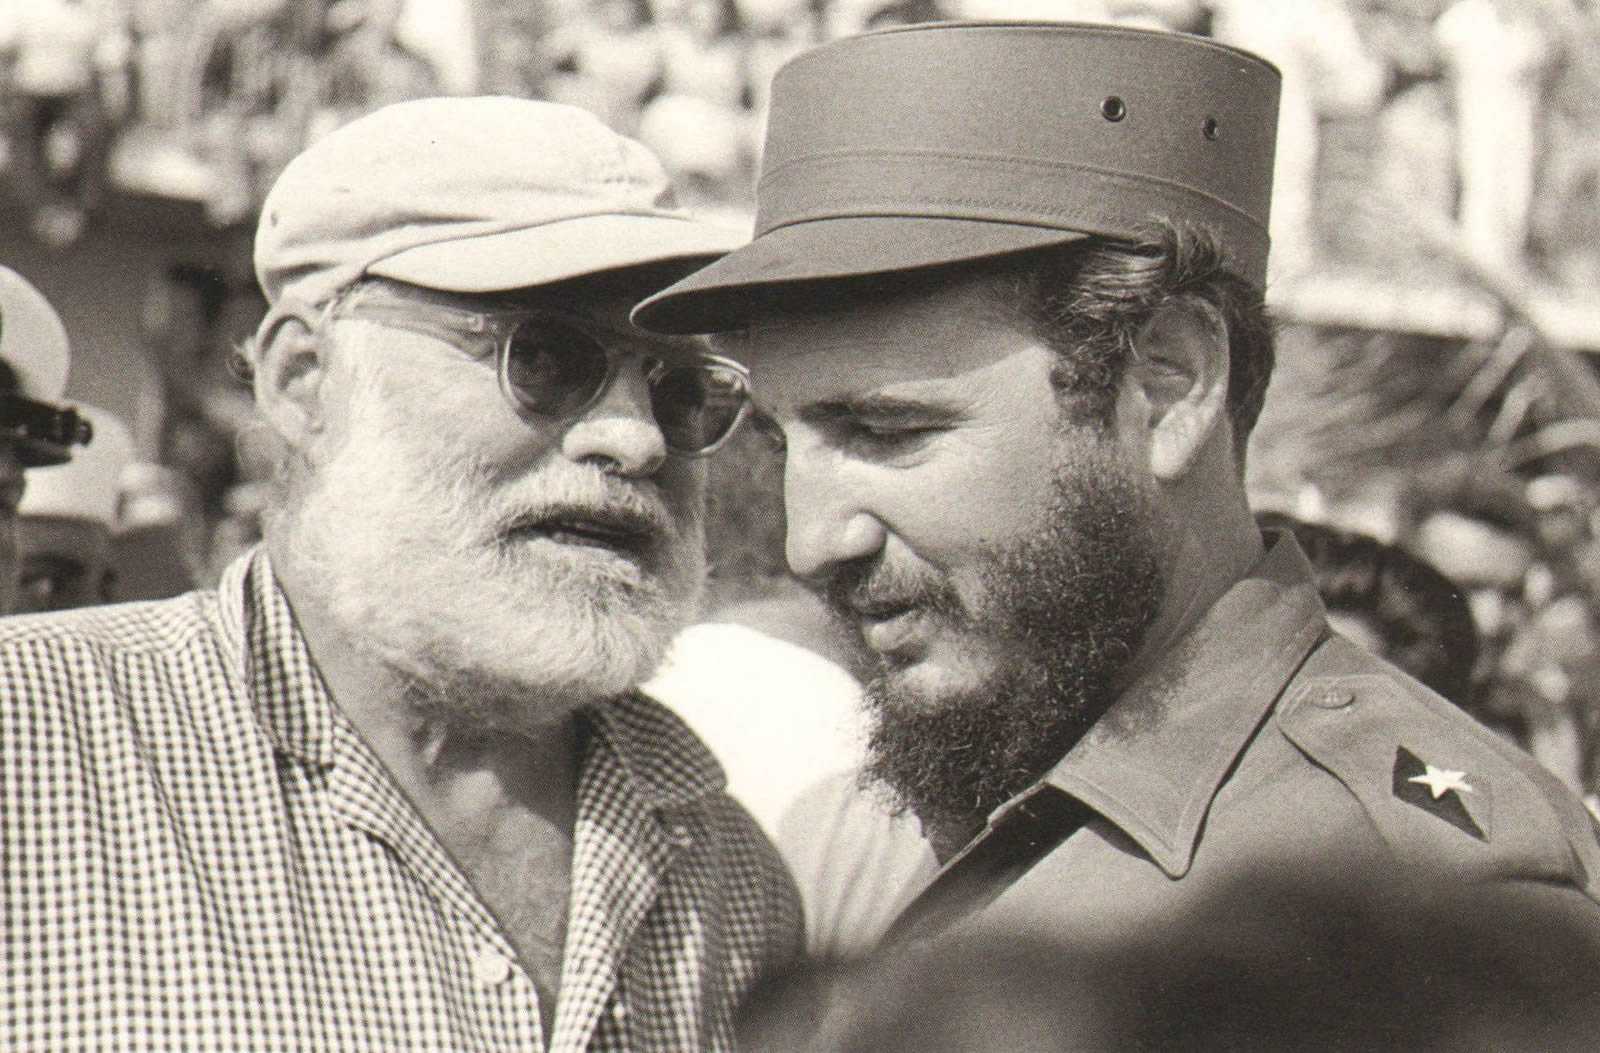 la Habana - Hemingway tour